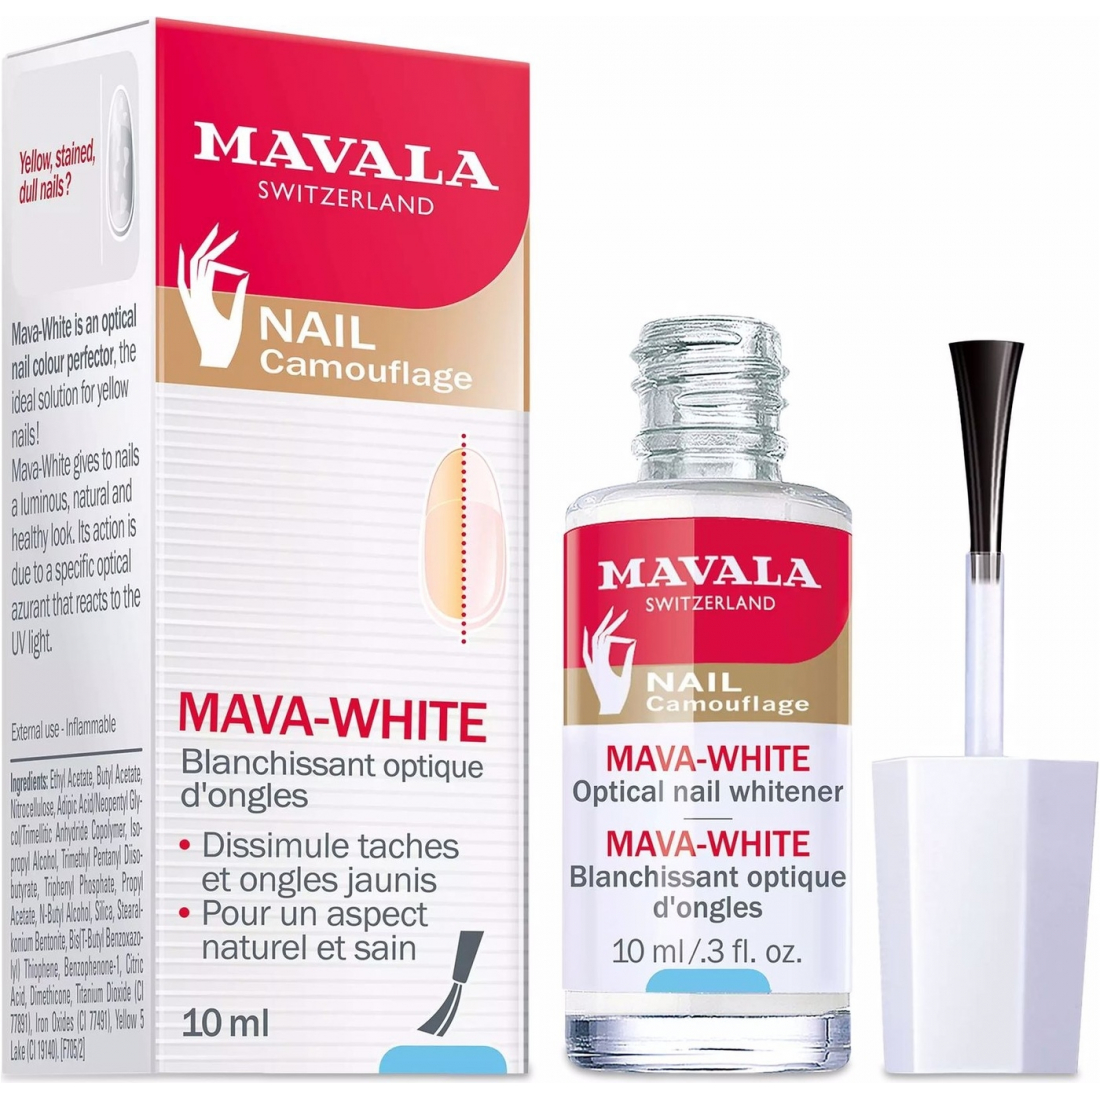 'Mava-White' Nagelaufheller - 10 ml